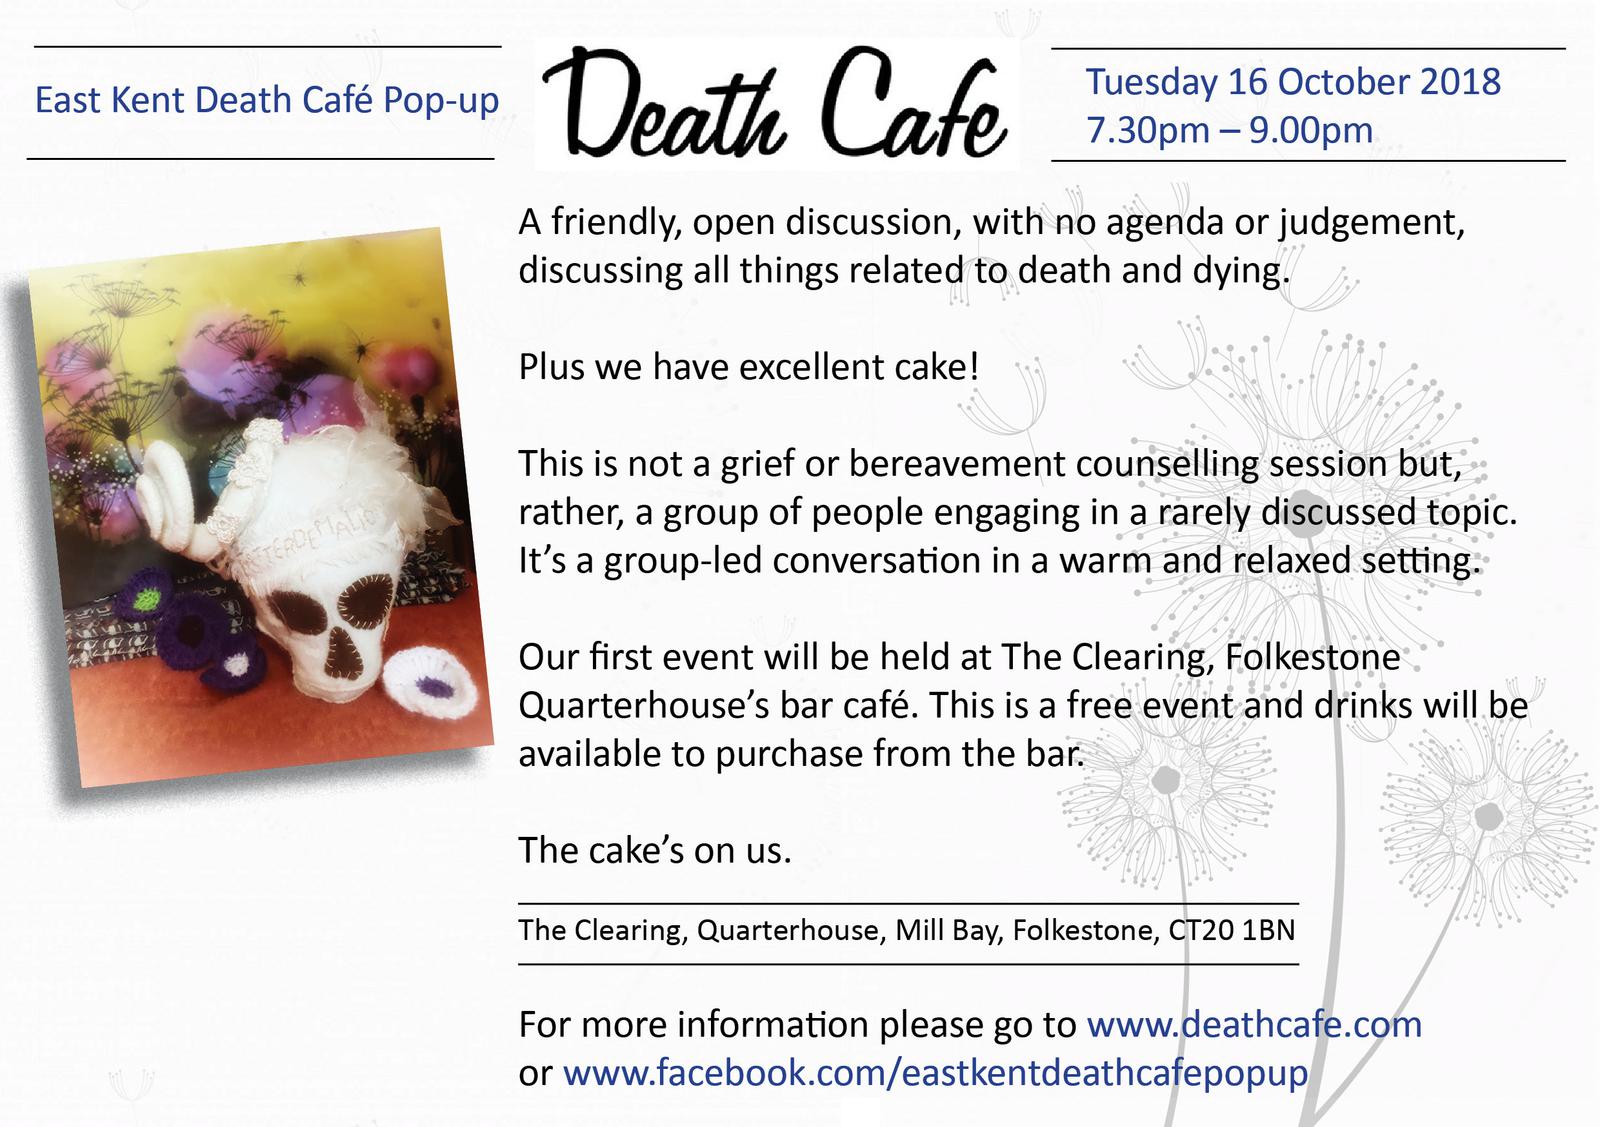 East Kent Death Cafe Pop Up